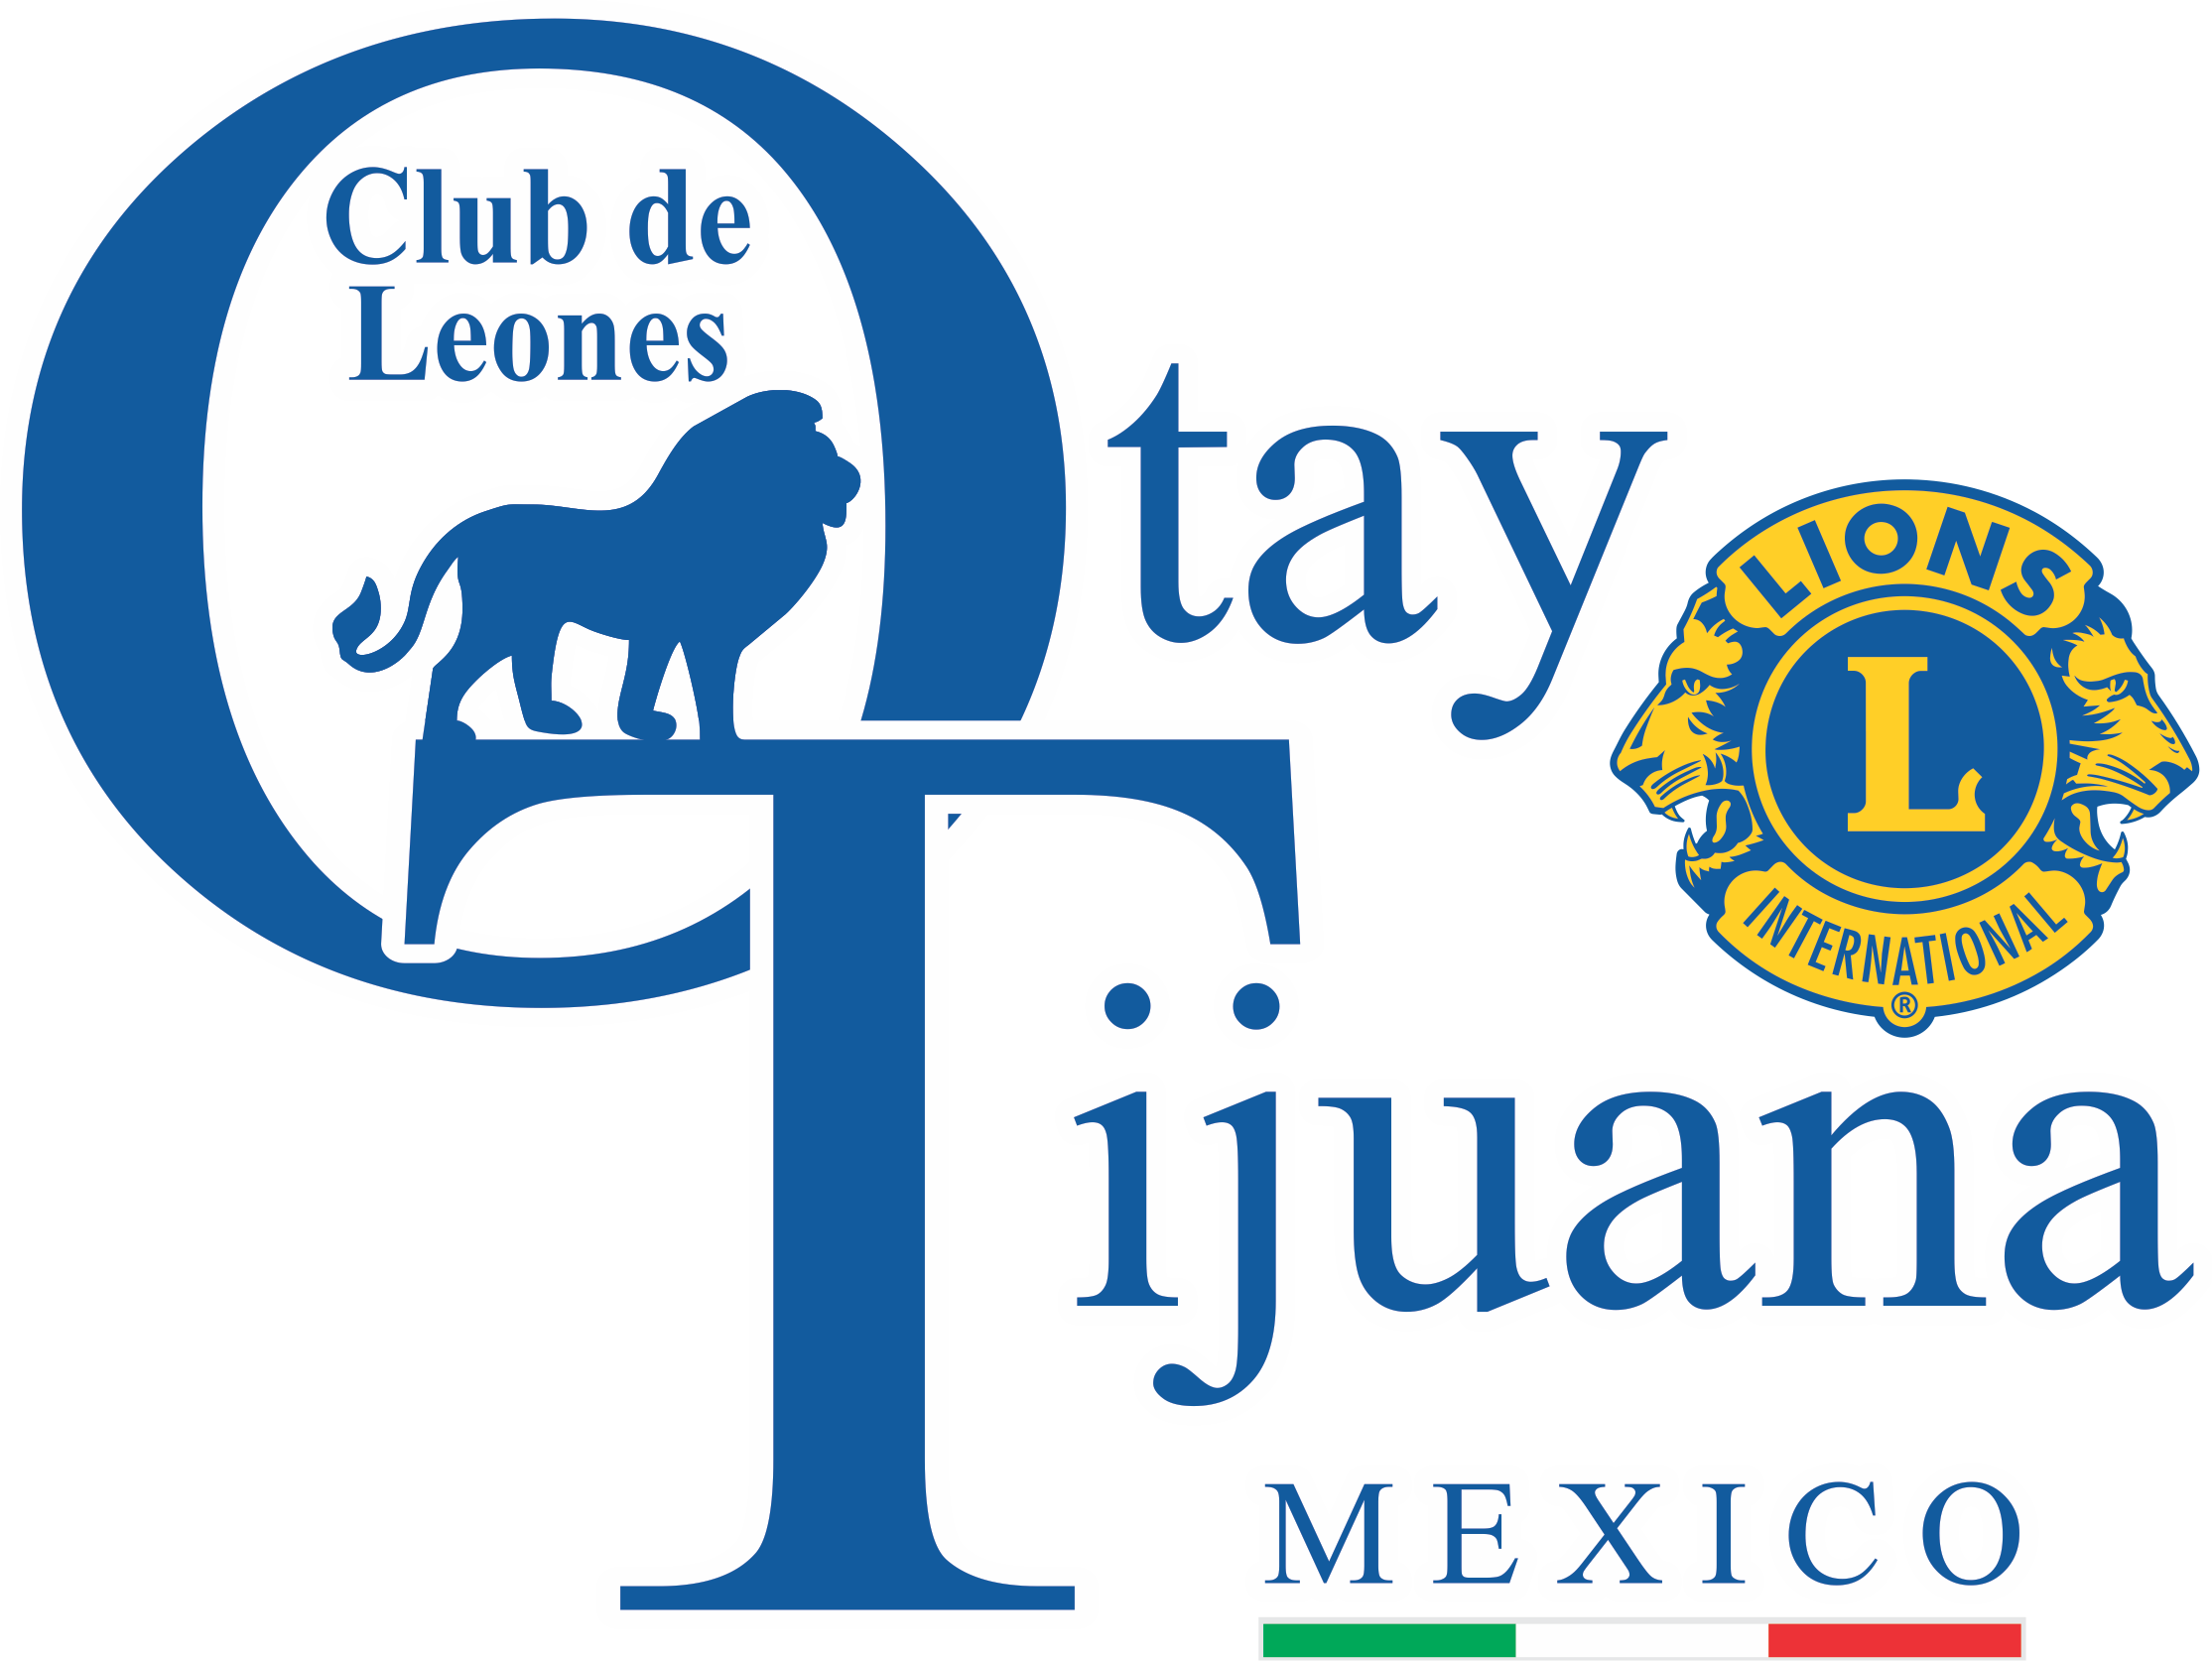 Club De Leones Tijuana